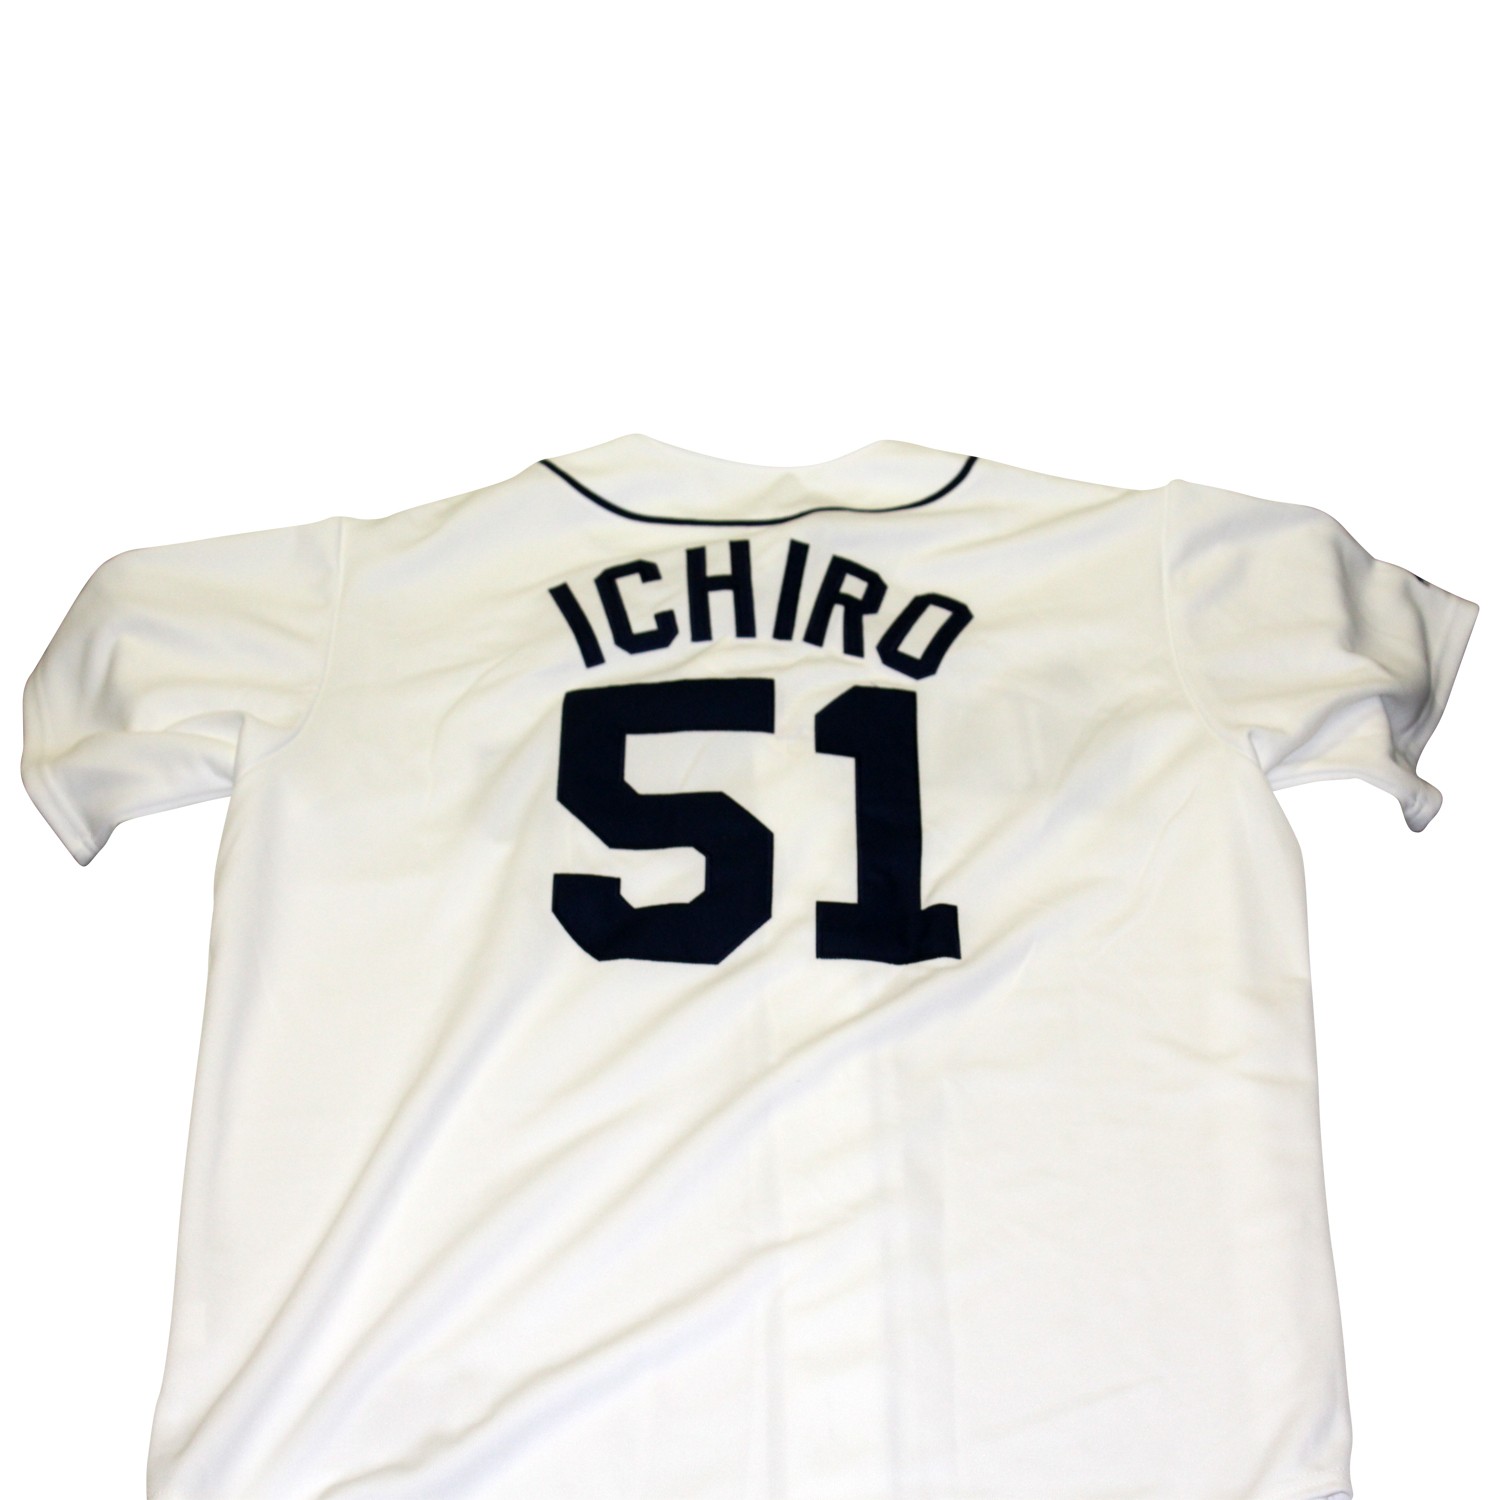 ichiro baseball jersey